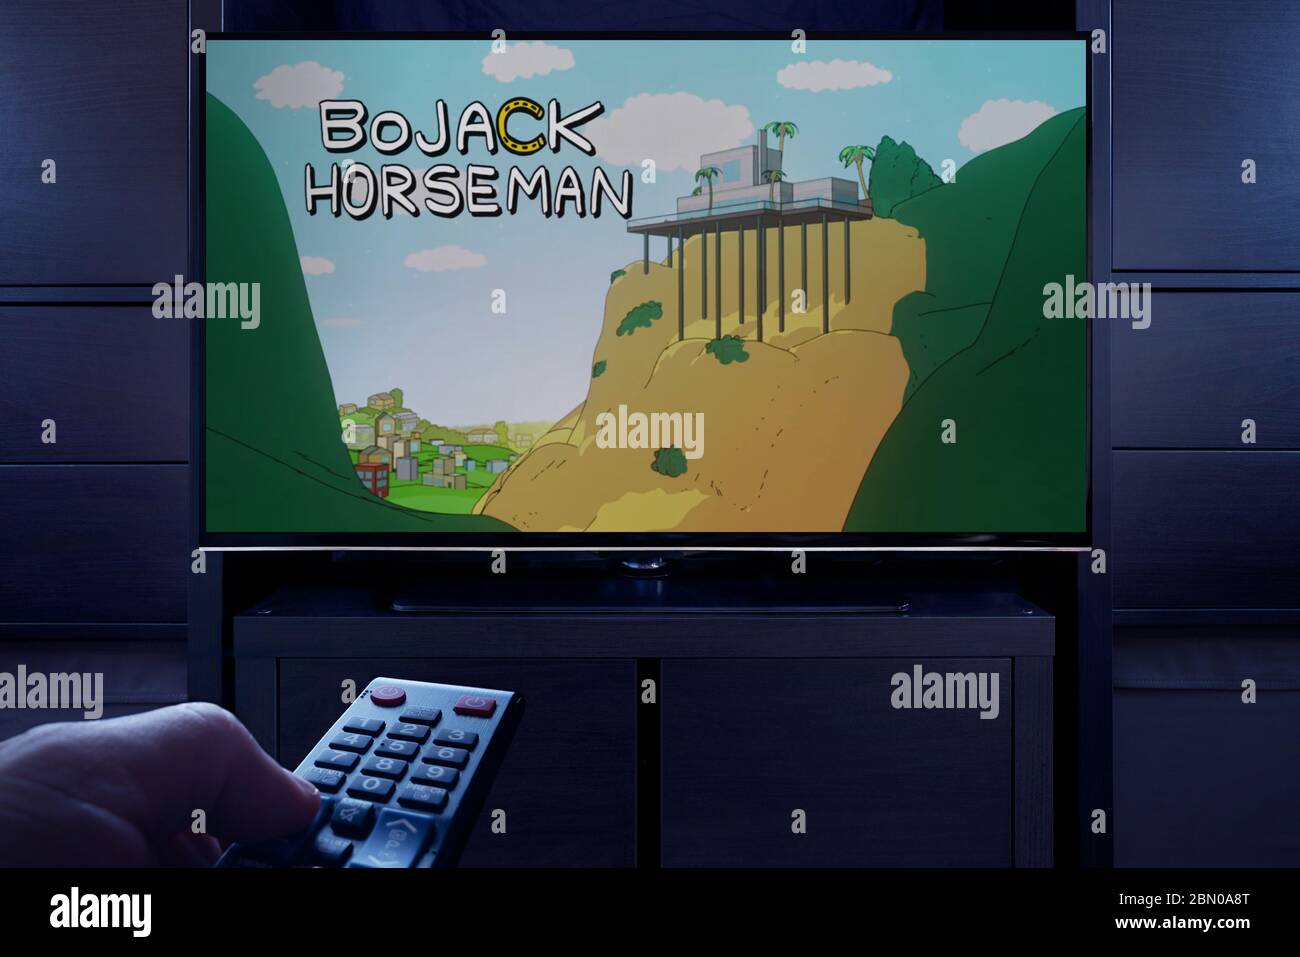 Un homme pointe une télécommande vers le téléviseur qui affiche l'écran principal de titre de Bojack Horseman (usage éditorial uniquement). Banque D'Images